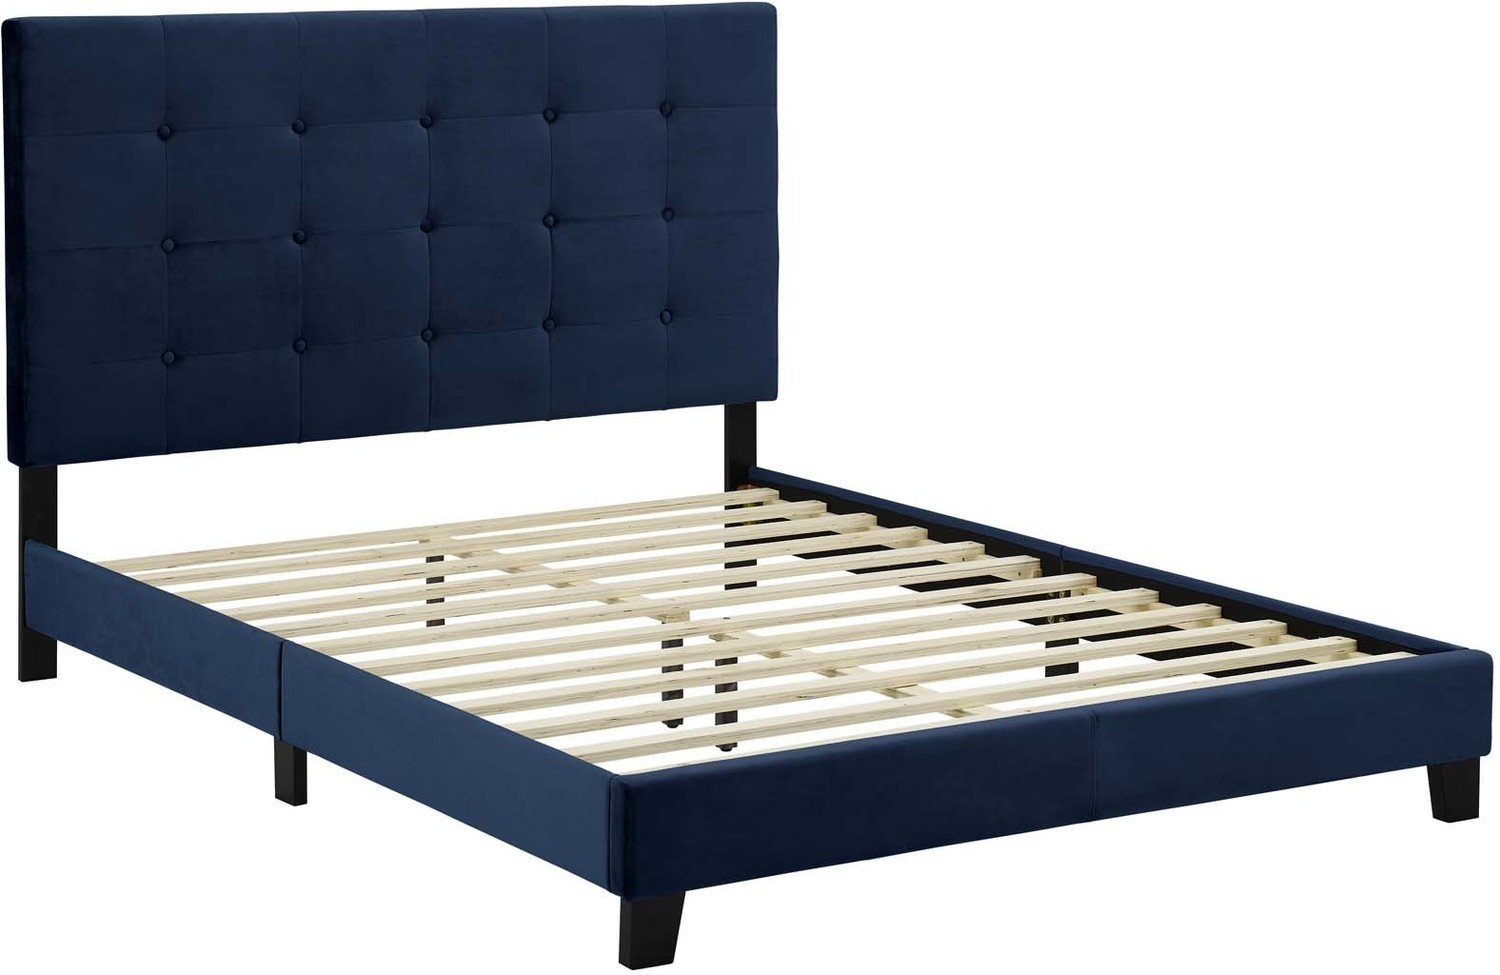 upholstered platform bed king Modway Furniture Beds Beds Midnight Blue